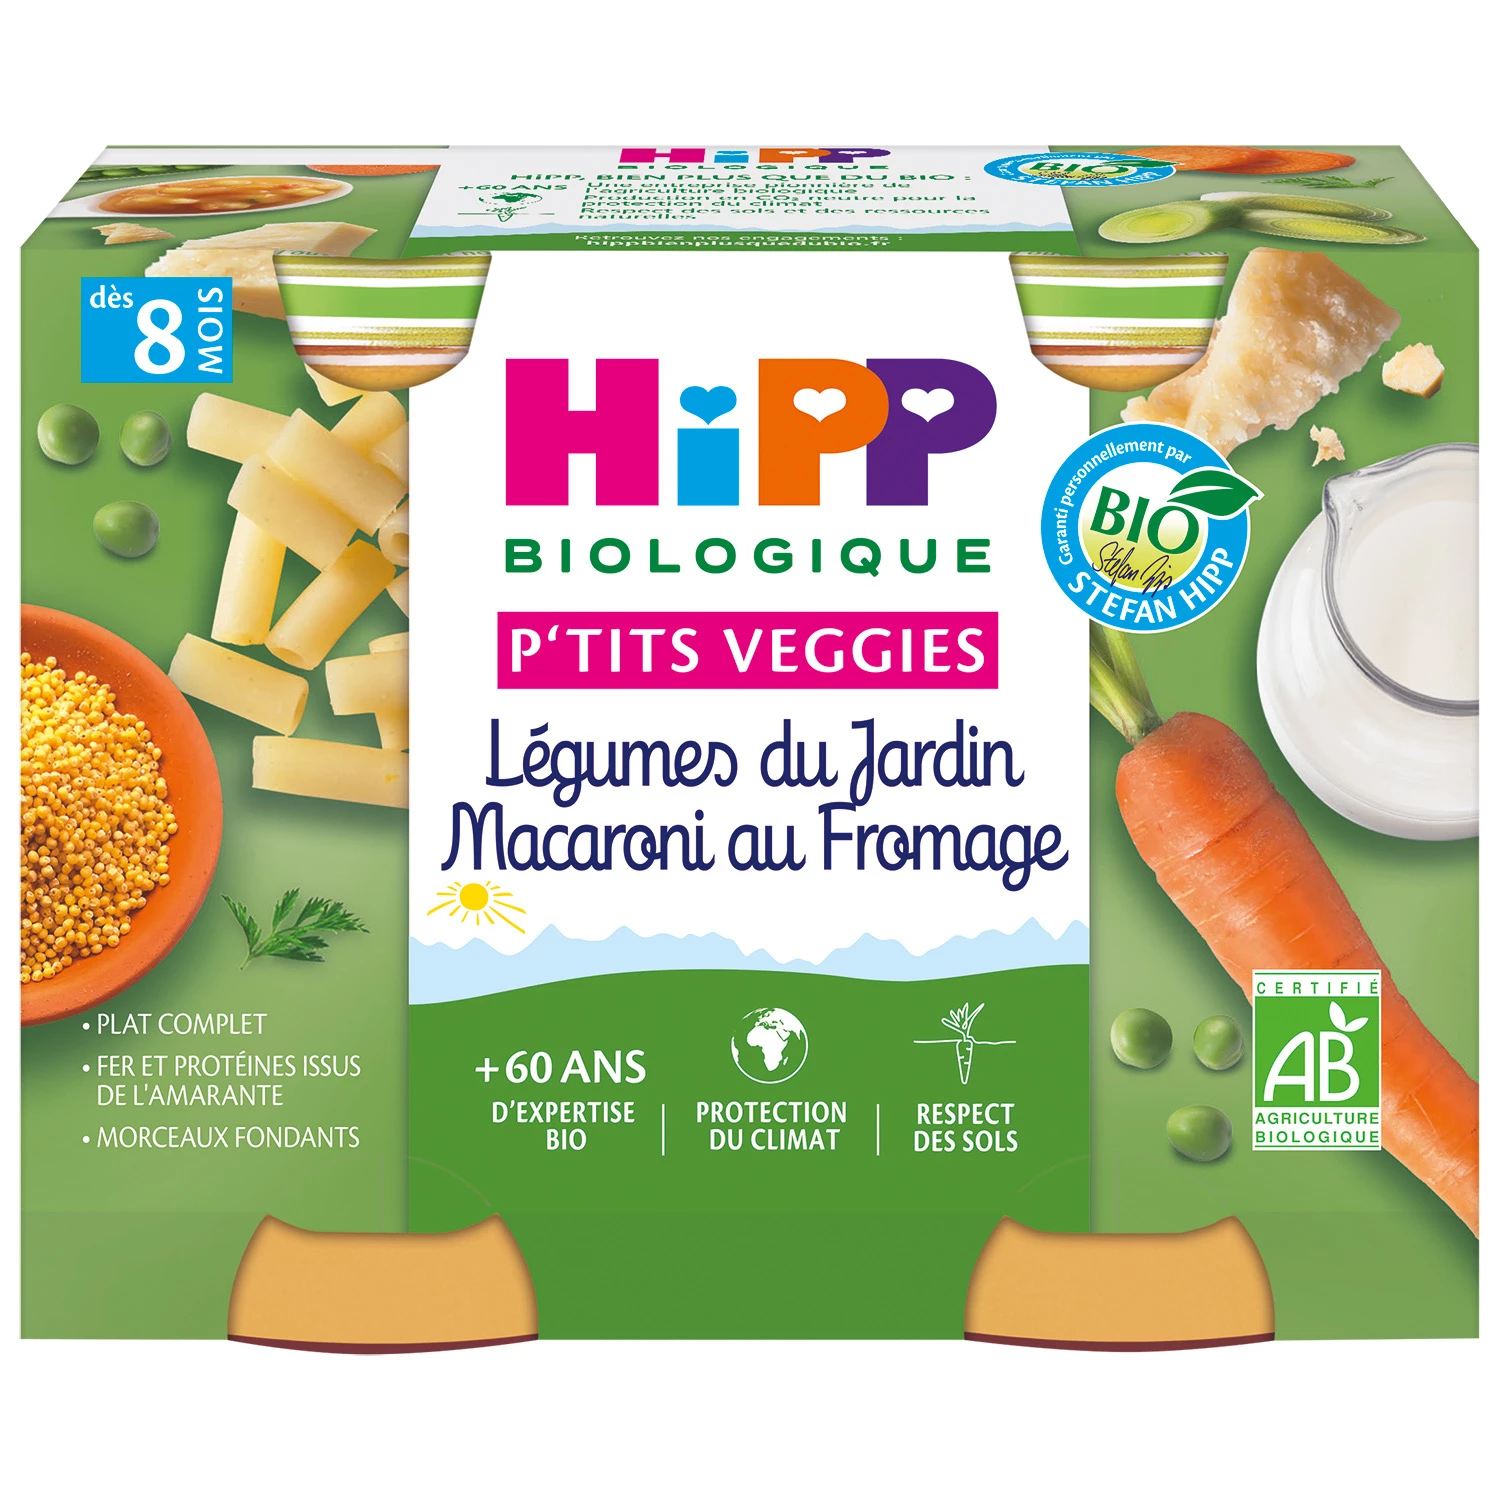 Маленькие детские горшочки для детей от 8 месяцев. Органические садовые овощи, макароны с сыром, 2 горшочка по 190 г. HIPP BioLOGIQUE.